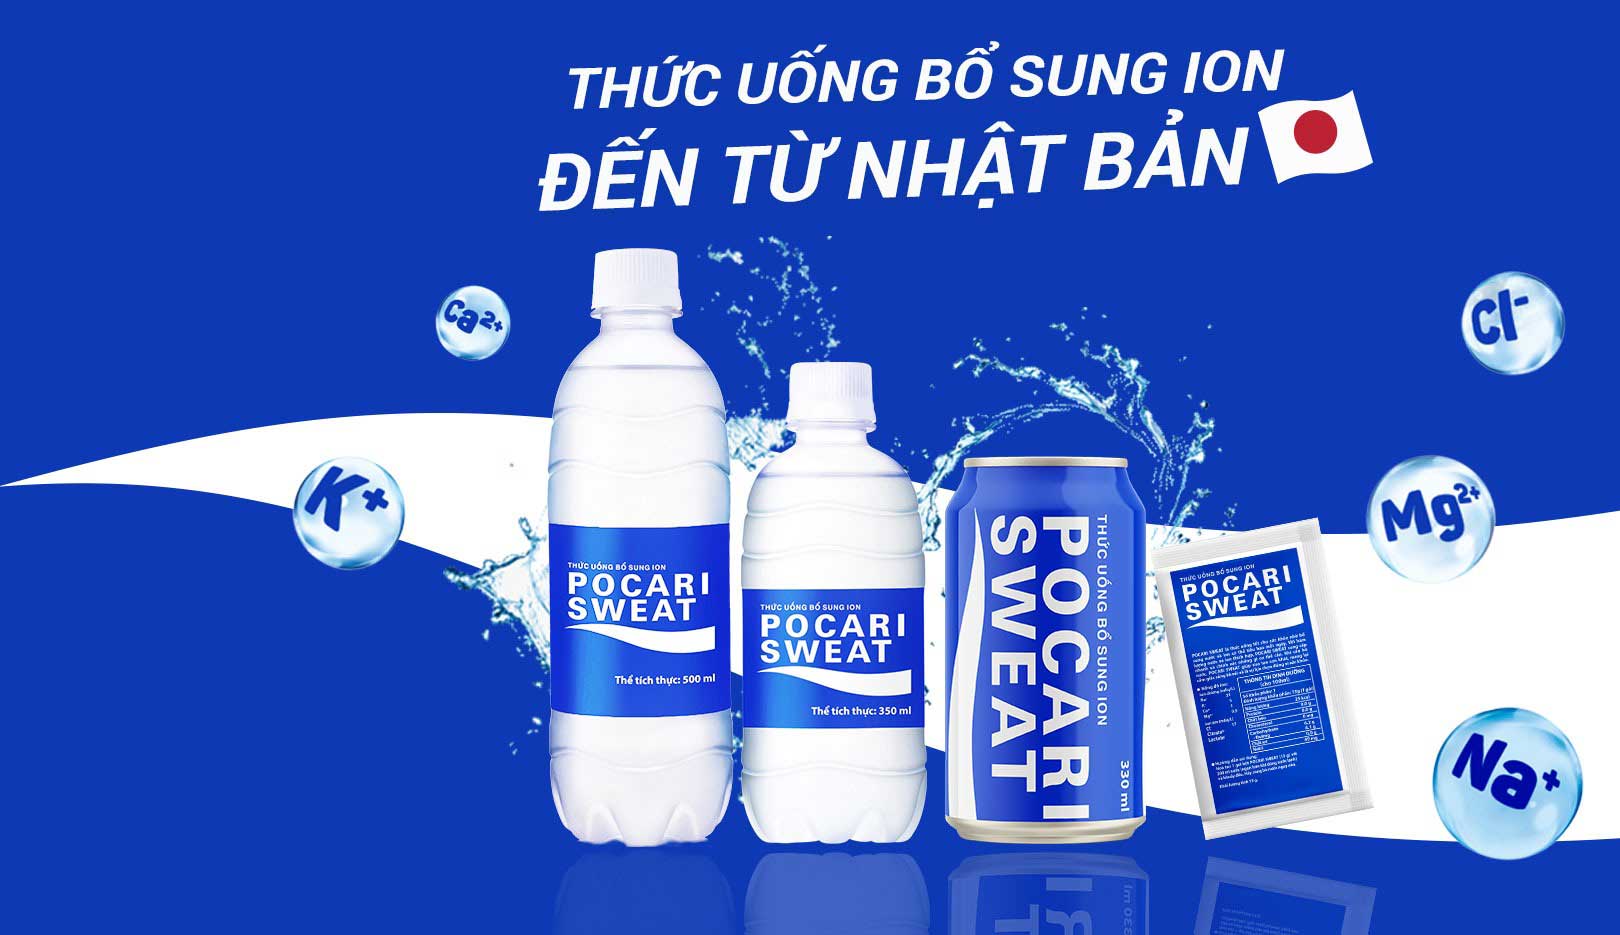 Nước uống Pocari Sweat bù khoáng bổ sung ion, đặt hàng giao nhanh